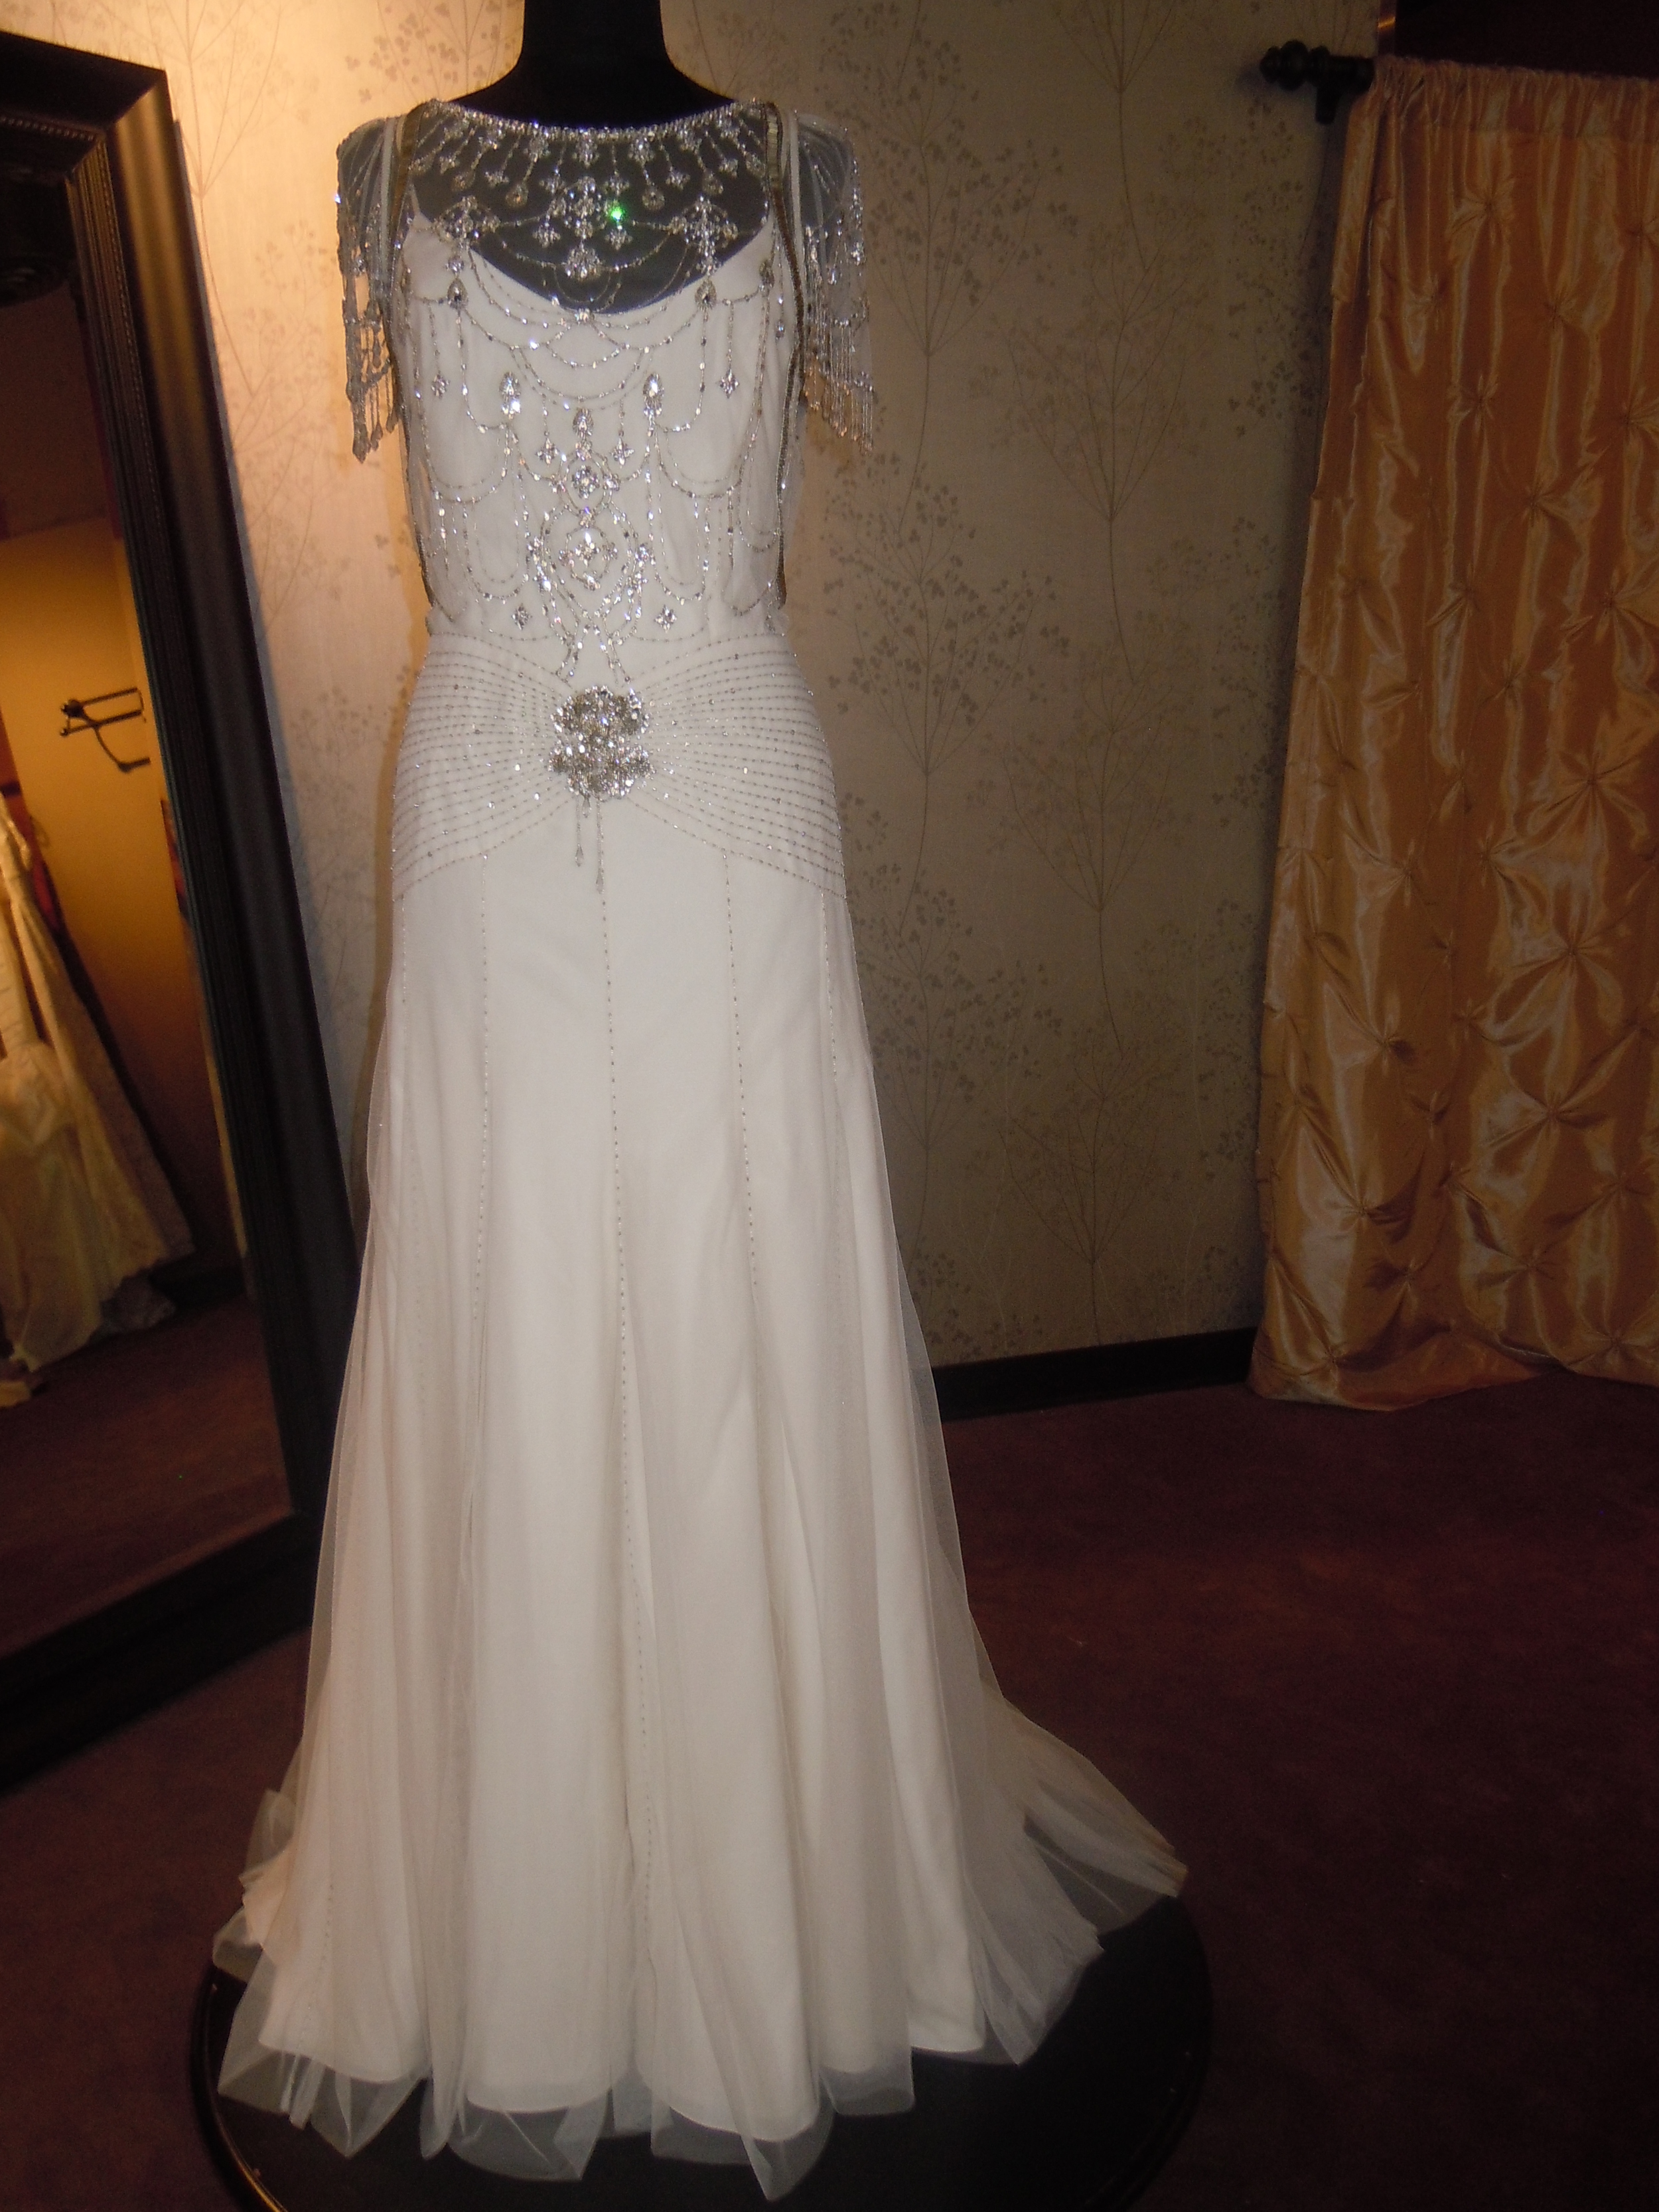 Jenny Packham Damask wedding dress